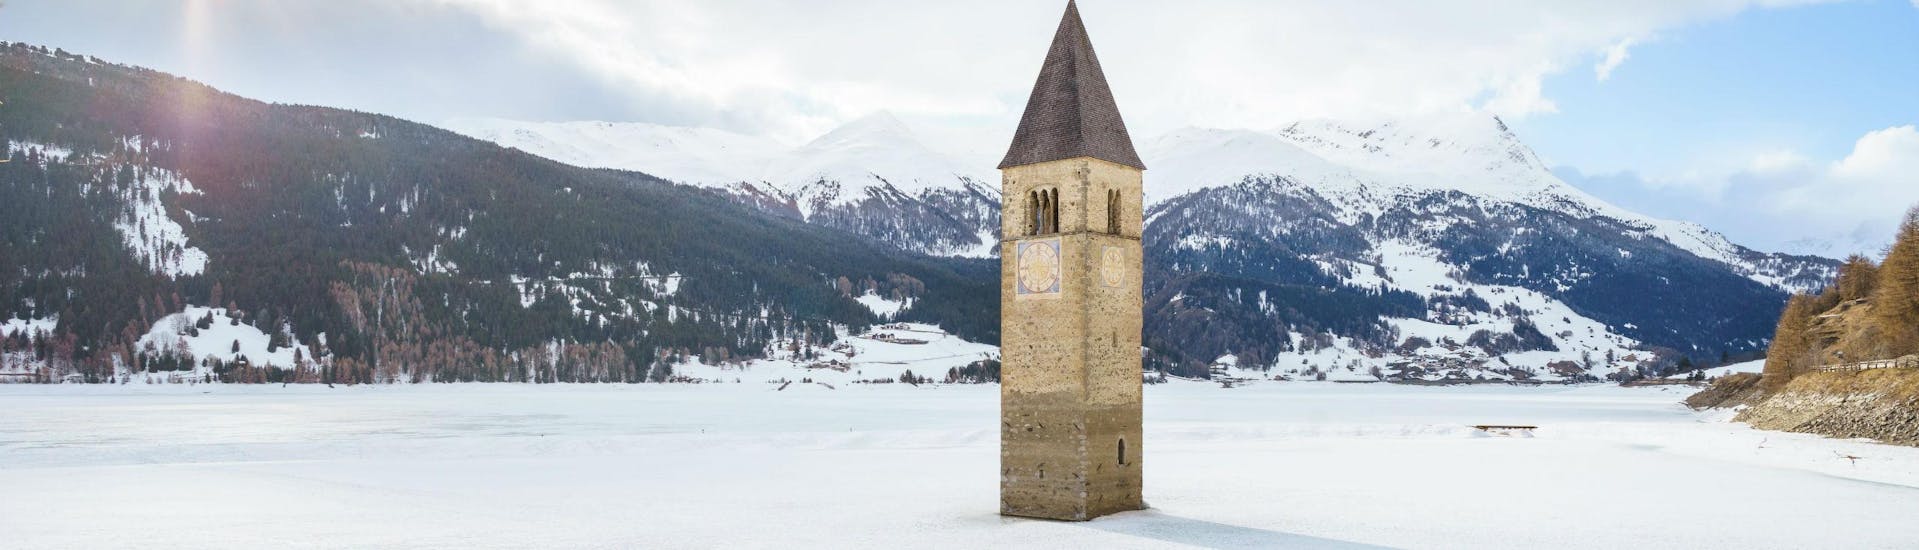 Ein Bild der versunkenen Kirche im Reschensee nahe dem österreichischen Skigebiet Nauders, wo angehende Skifahrer bei einer der örtlichen Skischulen einen Skikurs buchen können.